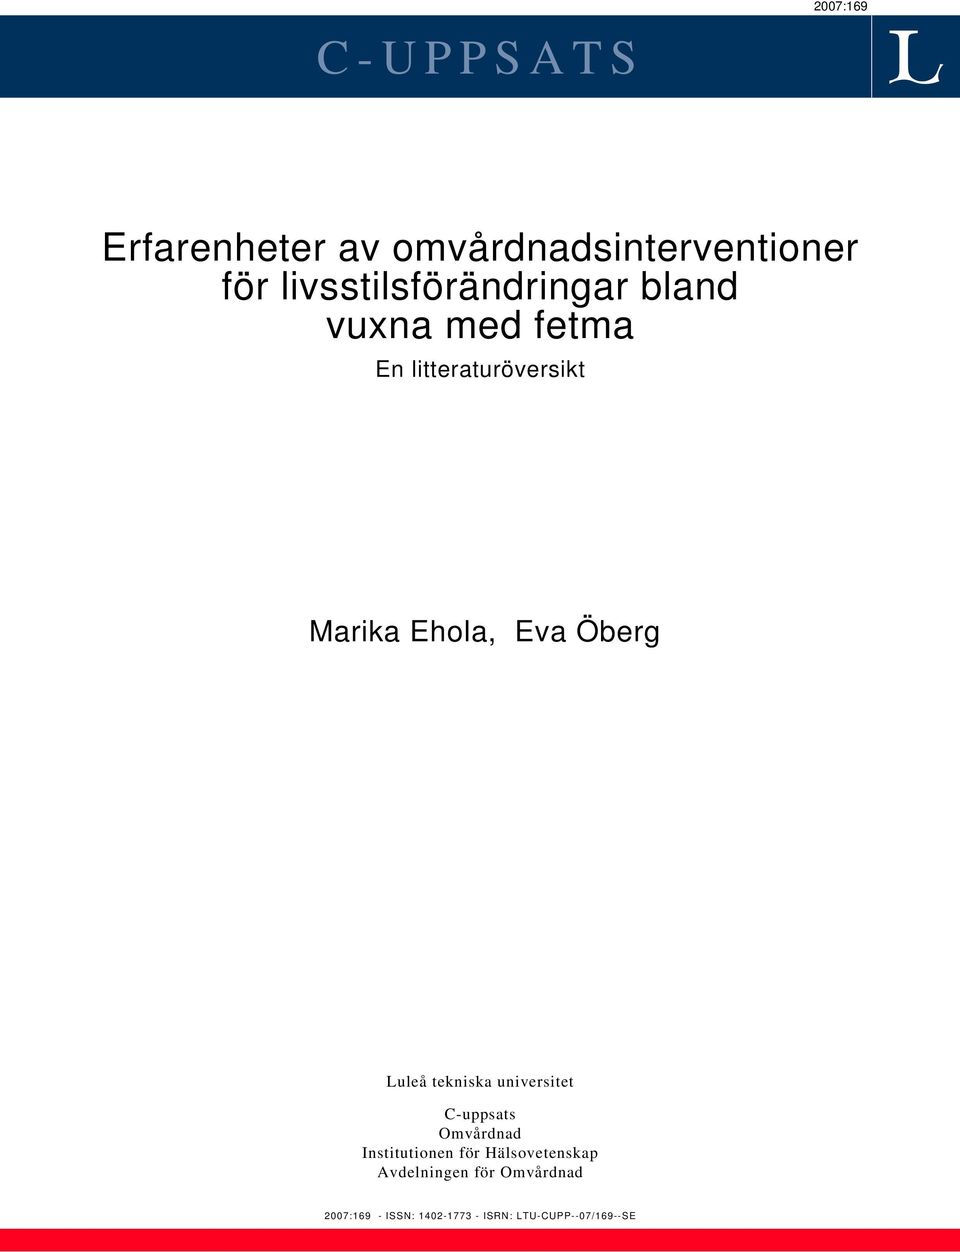 Ehola, Eva Öberg Luleå tekniska universitet C-uppsats Omvårdnad Institutionen